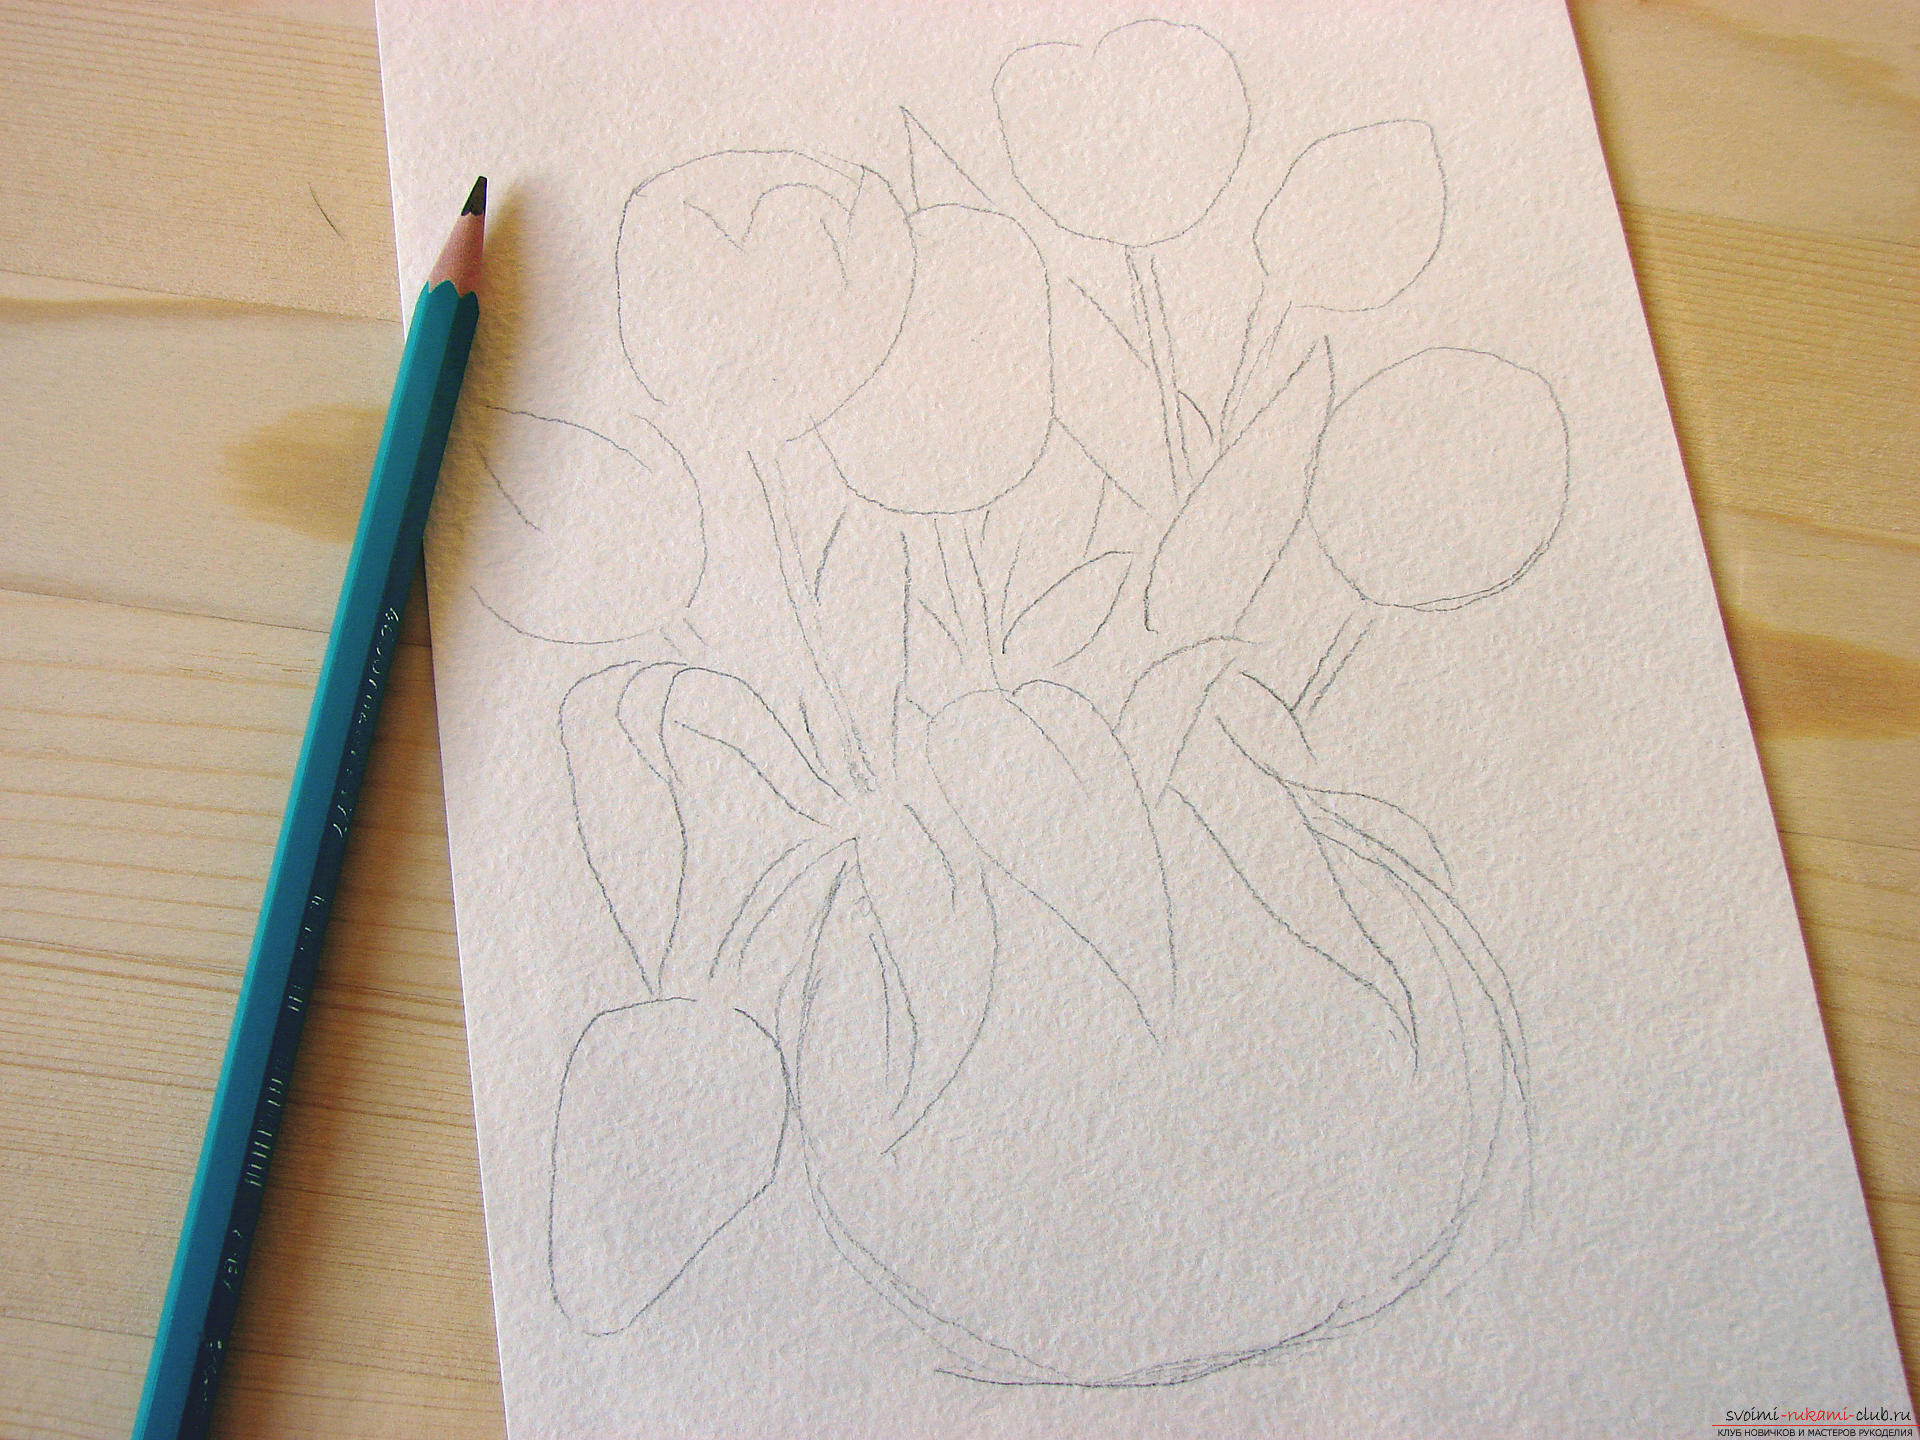 Мастер-класс по рисованию с фото научит как нарисовать цветы, подробно описав как рисуются тюльпаны поэтапно.. Фото №2